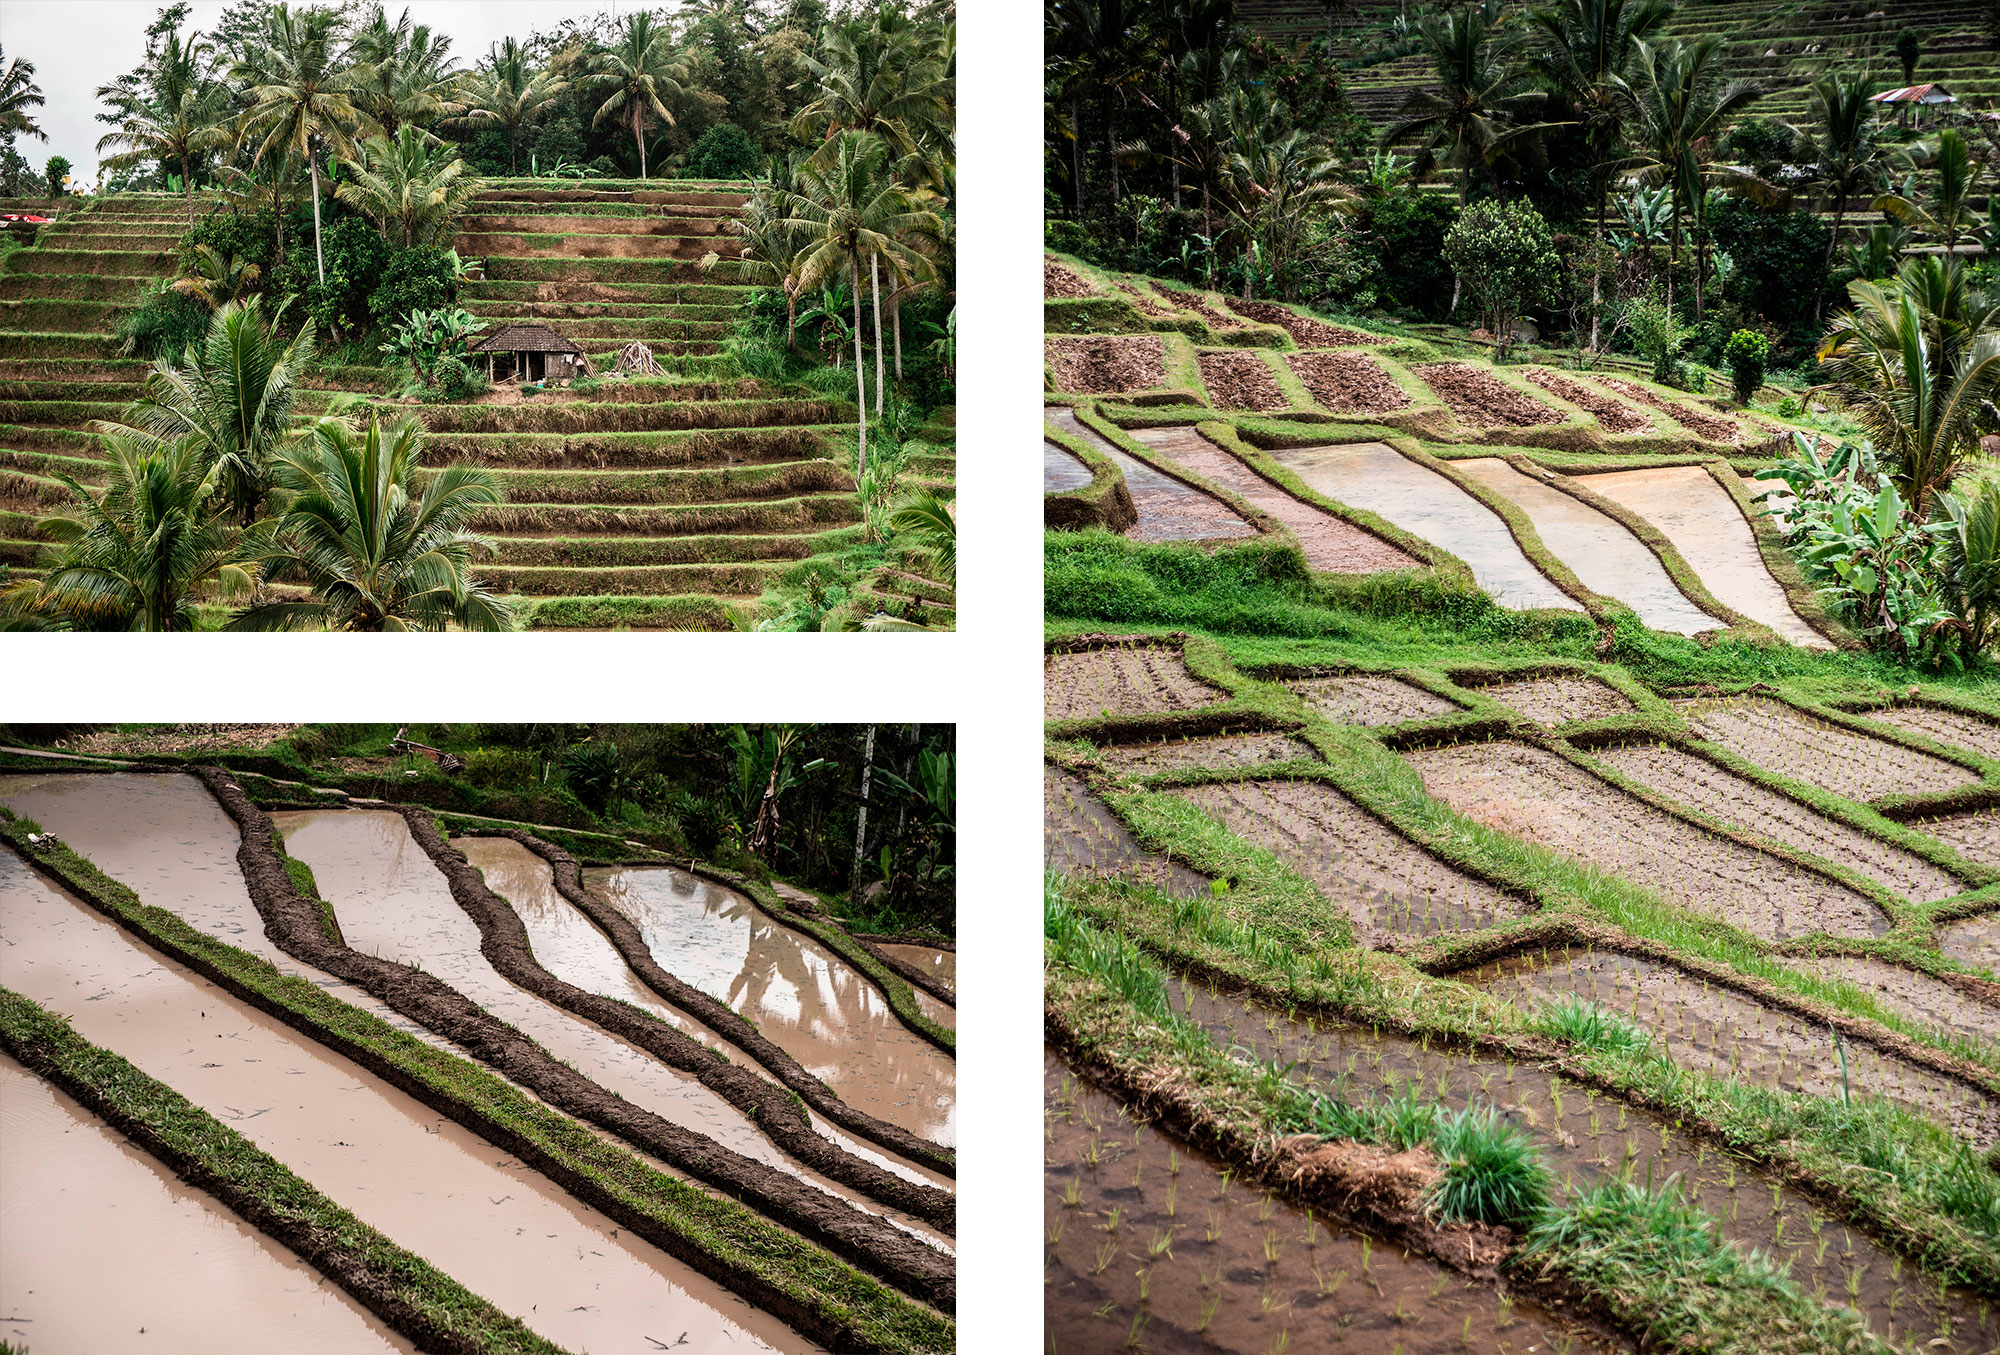 Les rizières de Jatiluwih à Bali